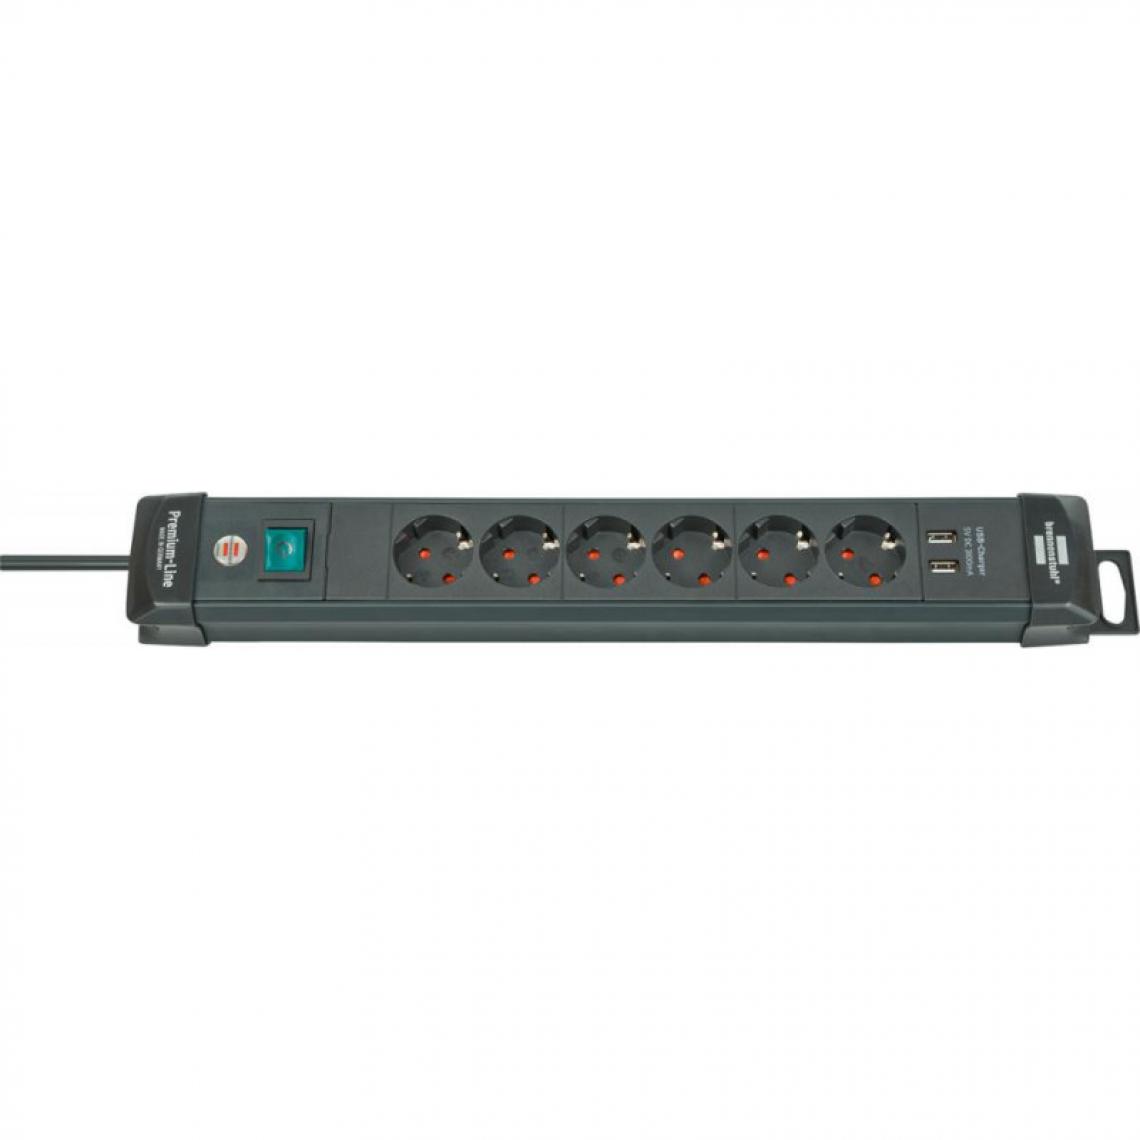 marque generique - Multiprise 6 prises avec USB Premium Line - 3m H05VV-F3G15 Brennenstuhl - Blocs multiprises